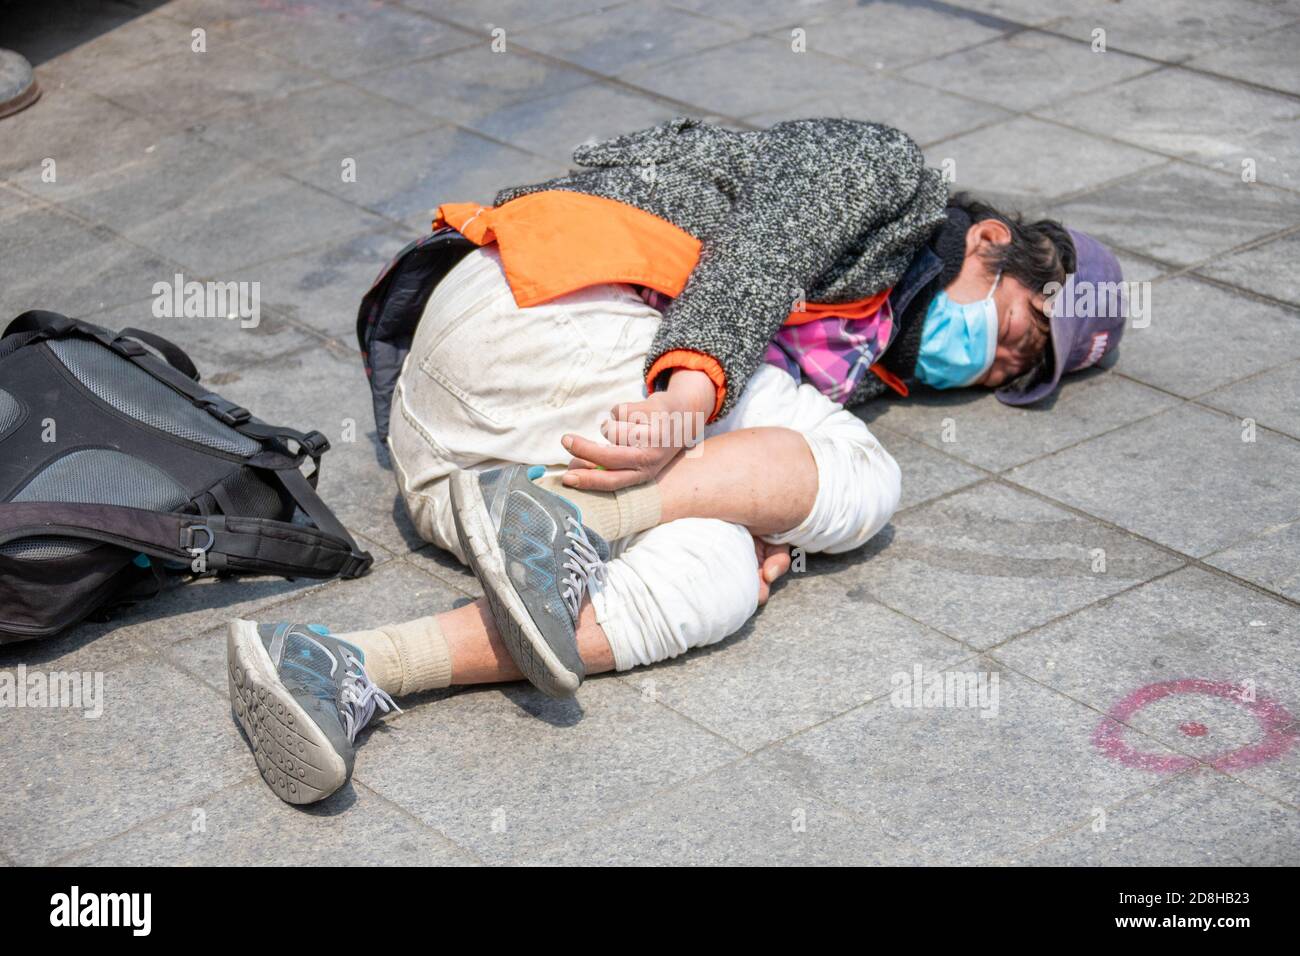 Homme sans abri portant un masque pendant la pandémie du coronavirus, Séoul, Corée du Sud Banque D'Images